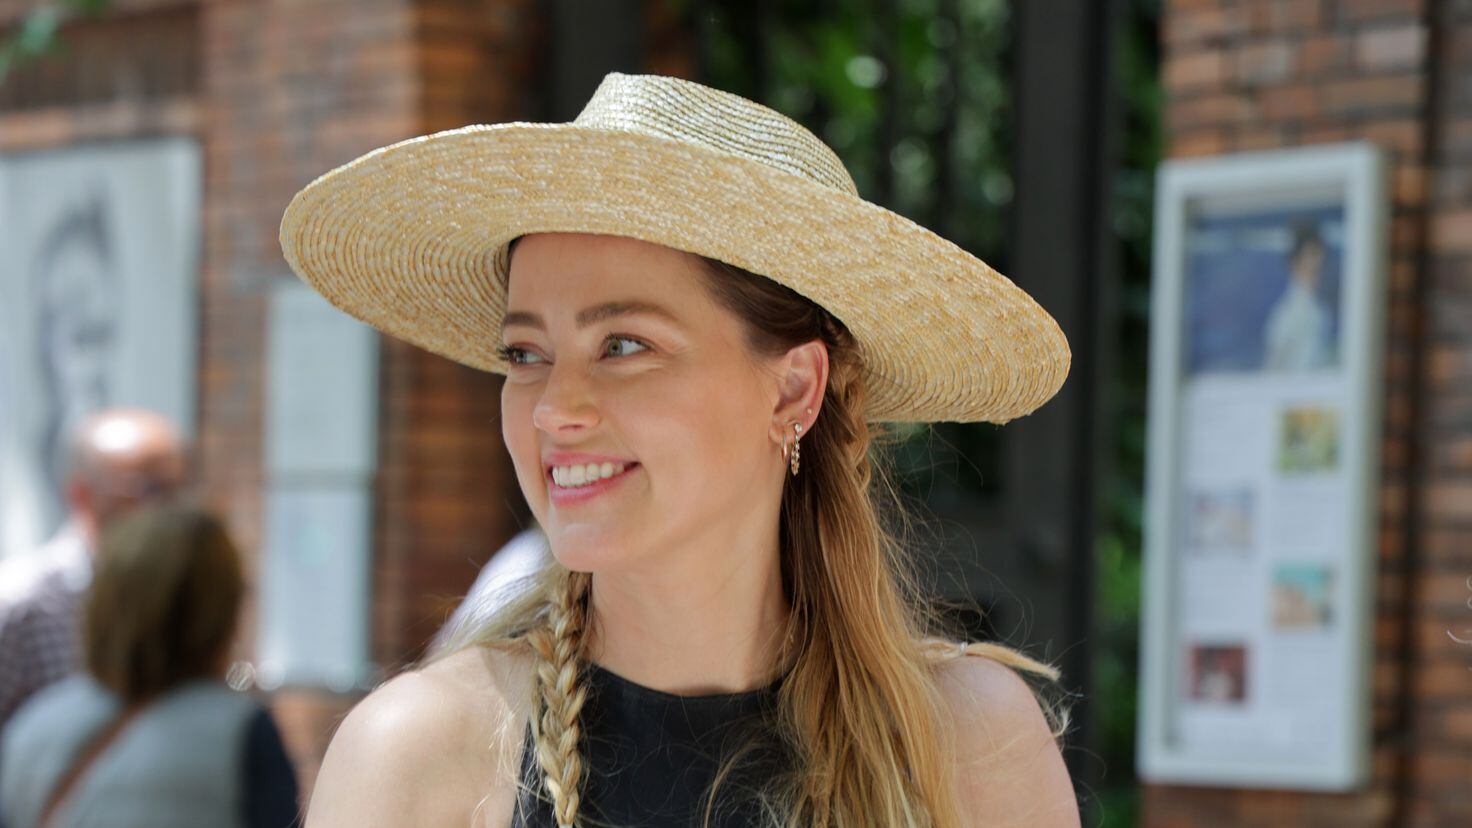 Amber Heard continúa firmando autógrafos para los fanáticos mientras se adapta a la vida en España